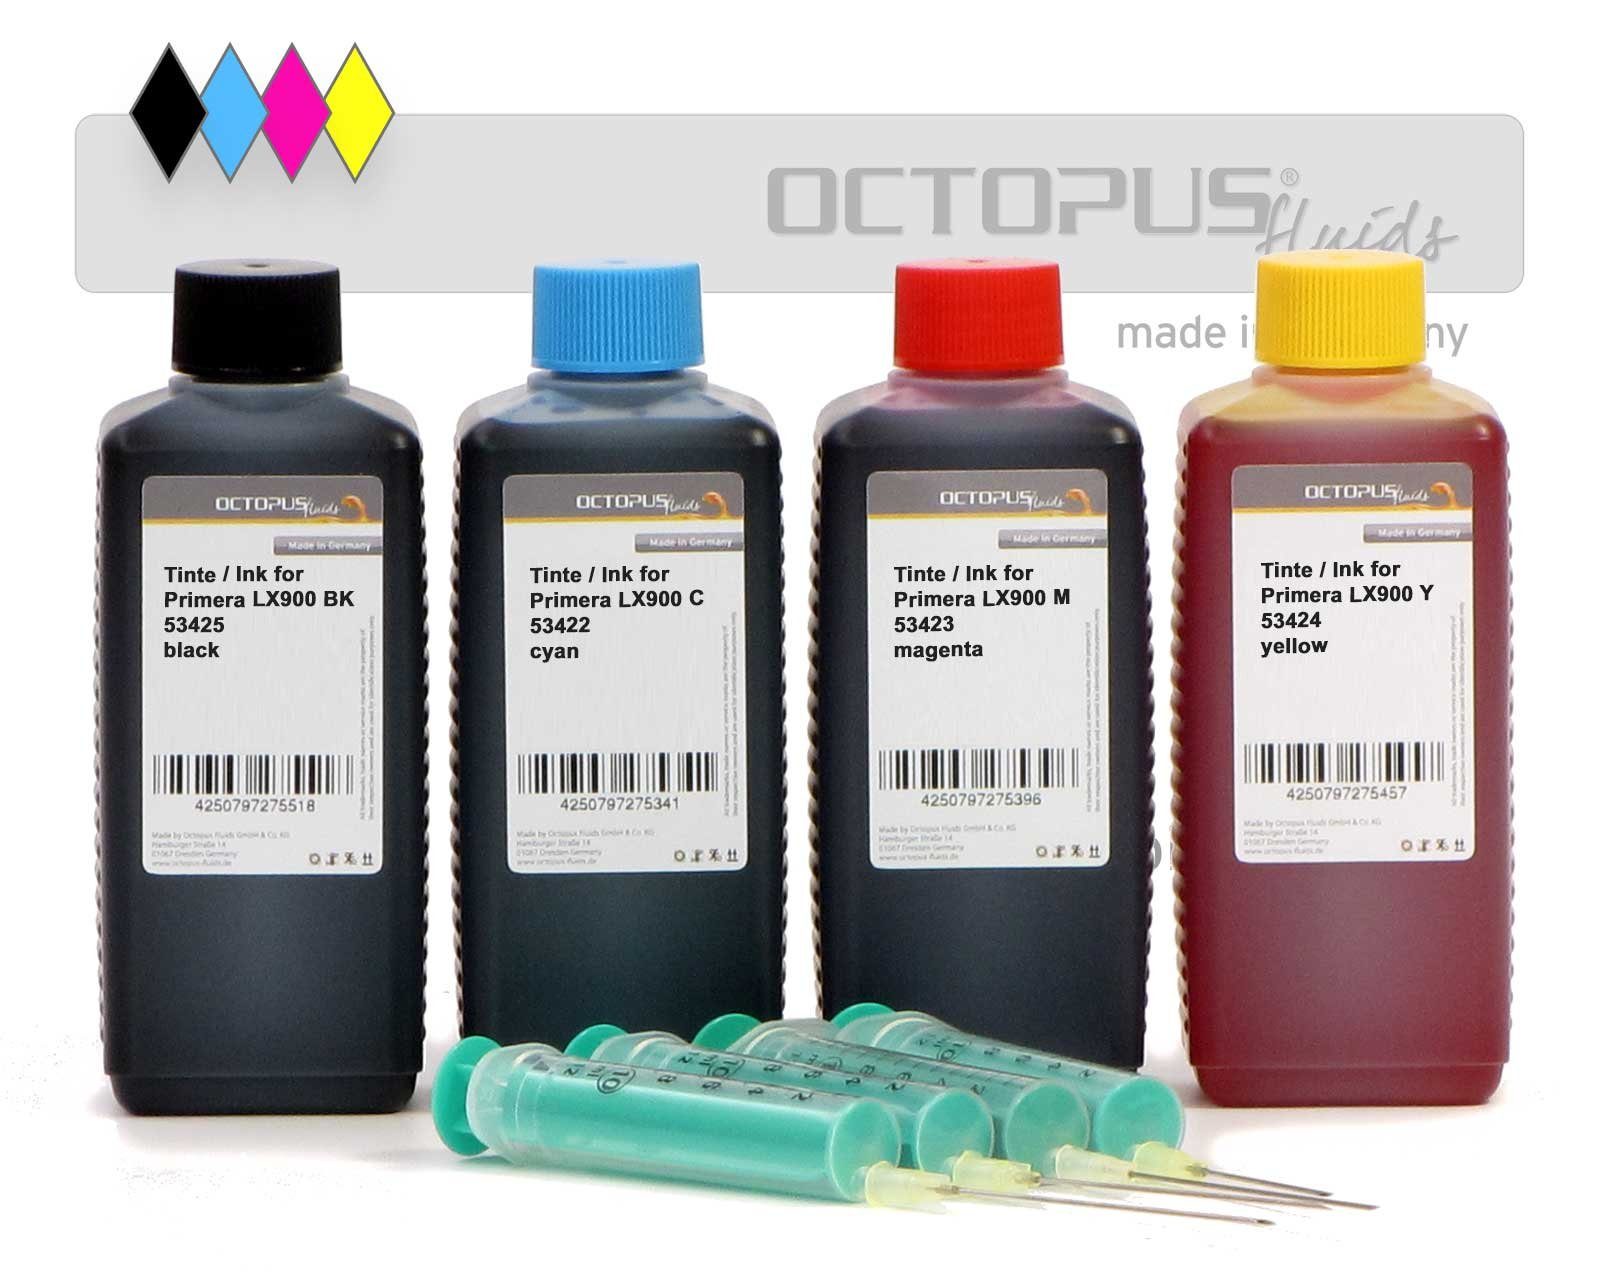 OCTOPUS Fluids Druckertinten für Primera LX900 Patronen Druckertinten Set Nachfülltinte (für Primera, 4x 100 ml)